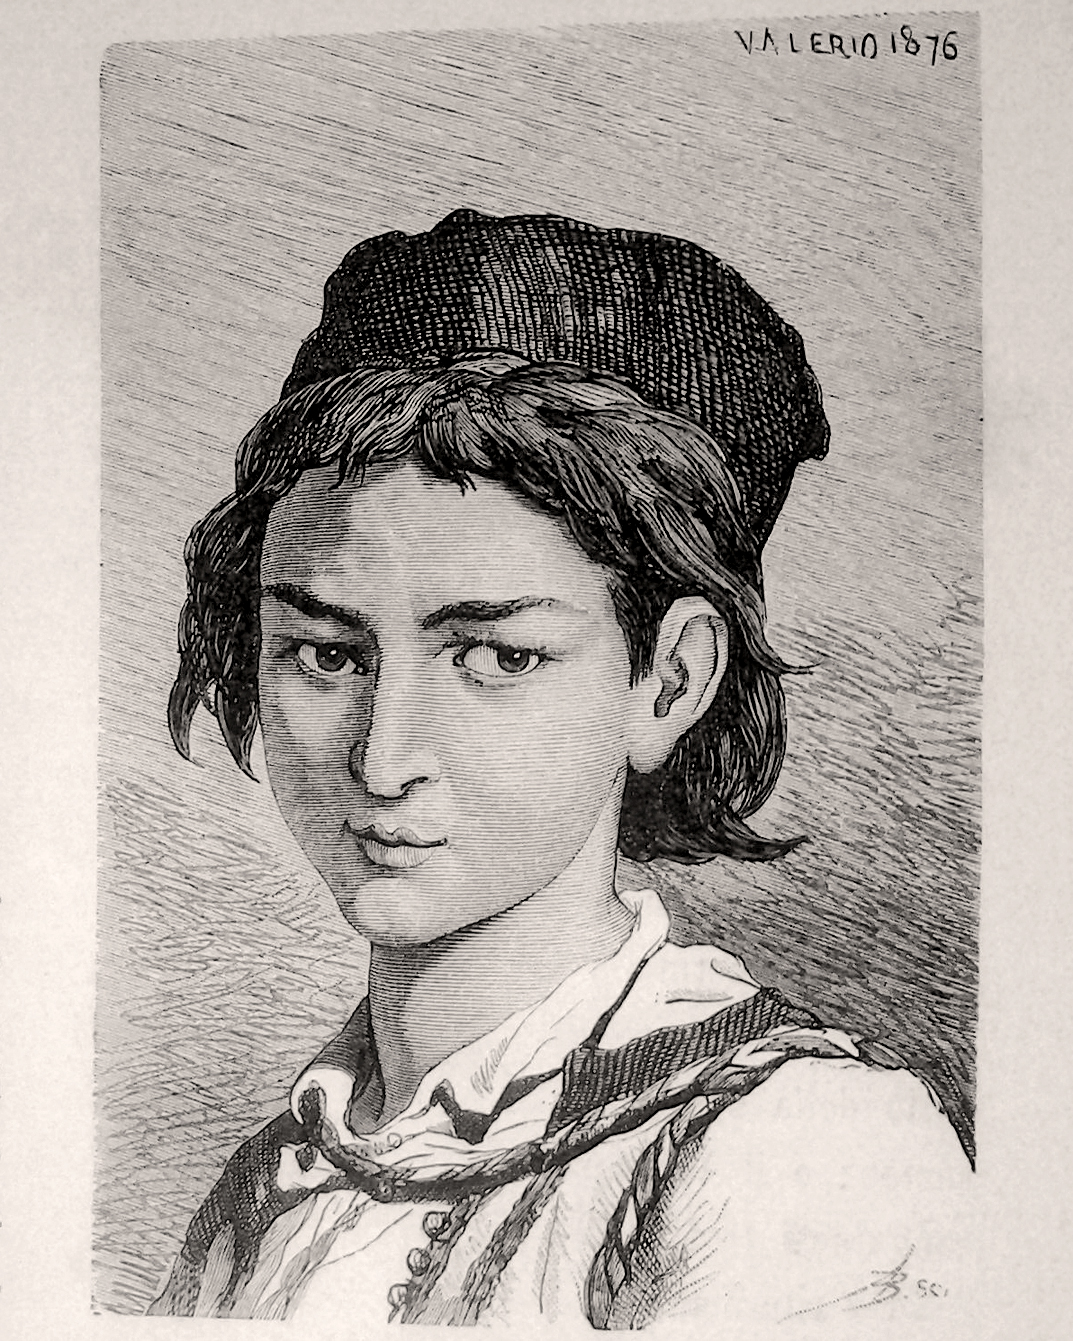 Mladić iz Njeguša, Crna Gora (1876)